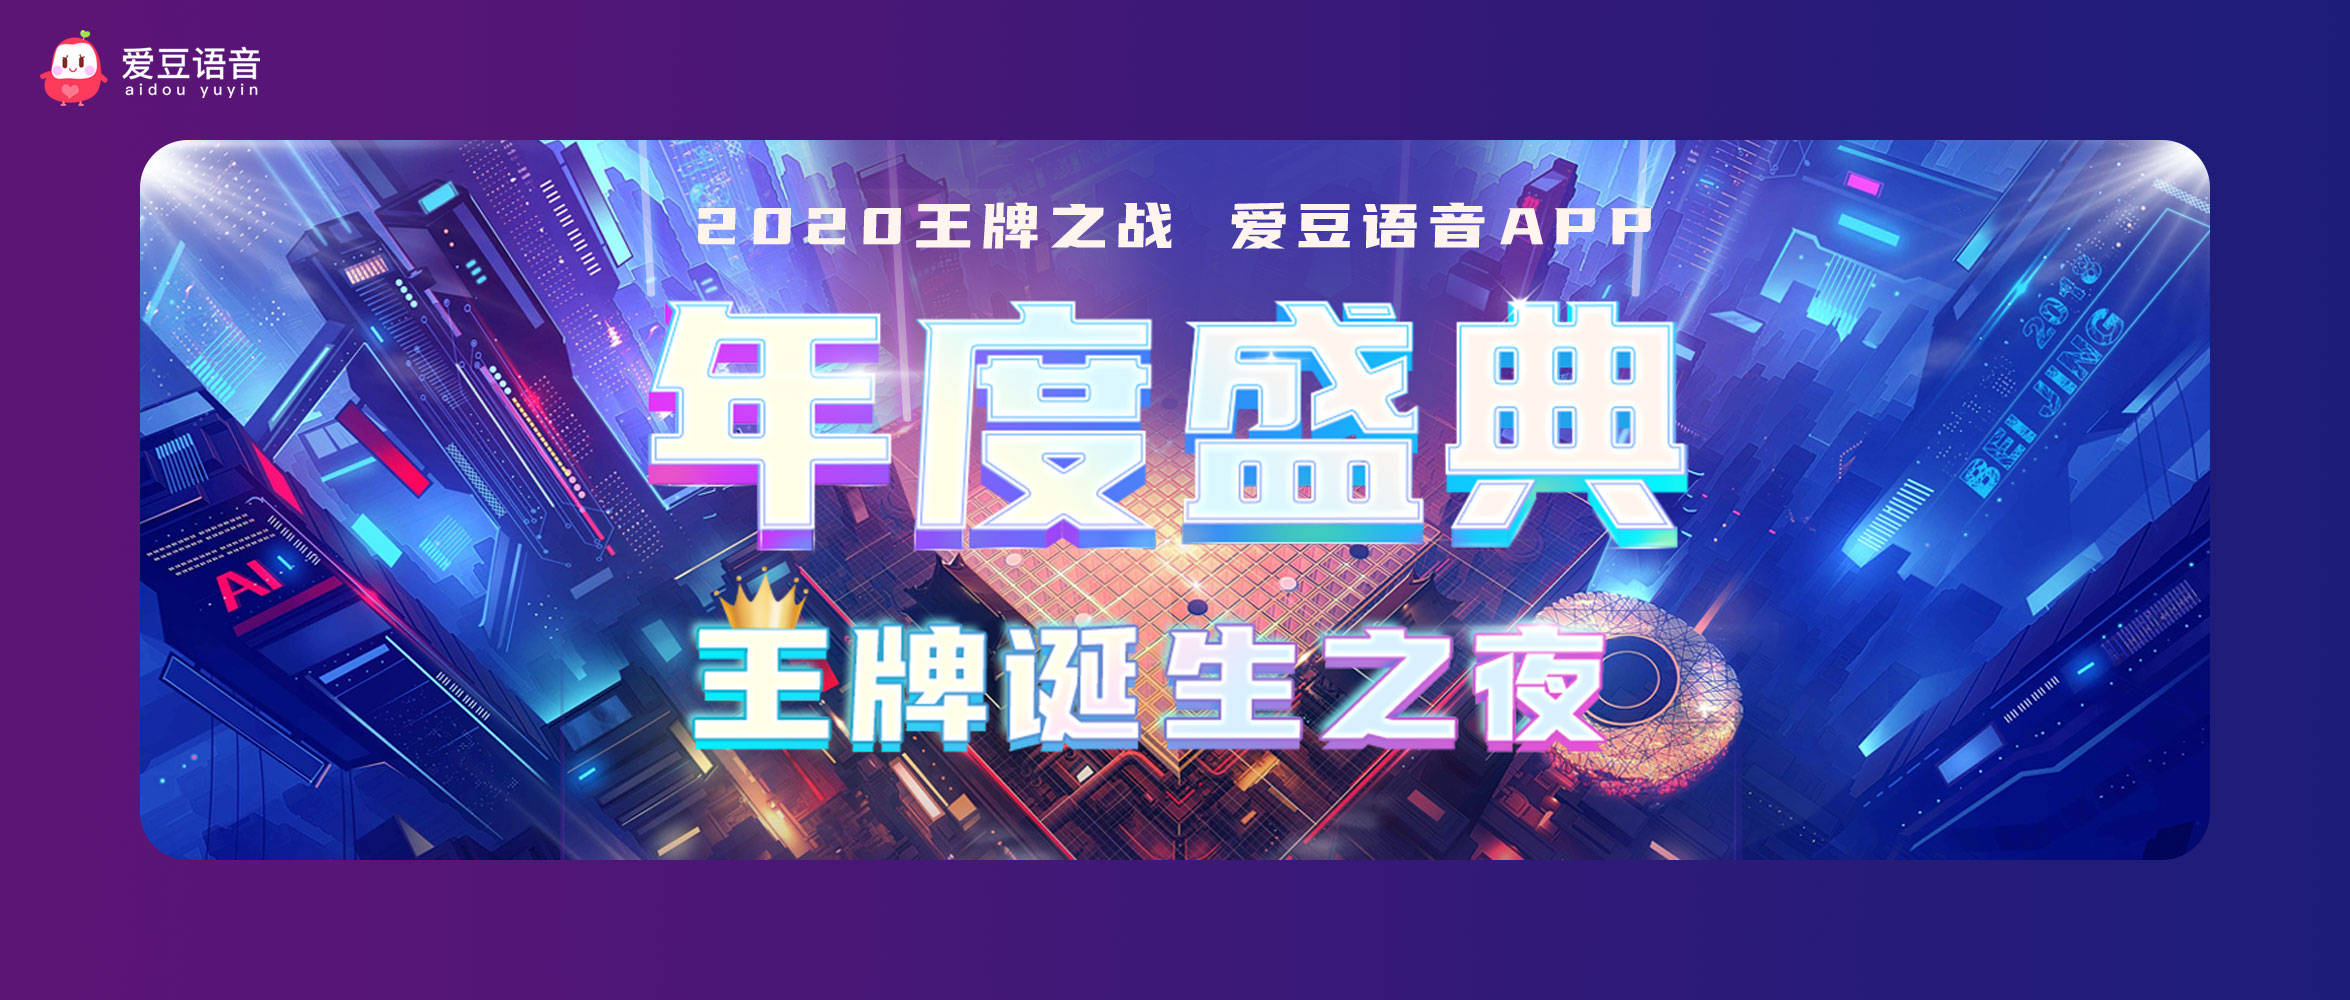 爱豆语音2020年度盛典最后冲刺，角逐最强王牌巅峰荣耀！